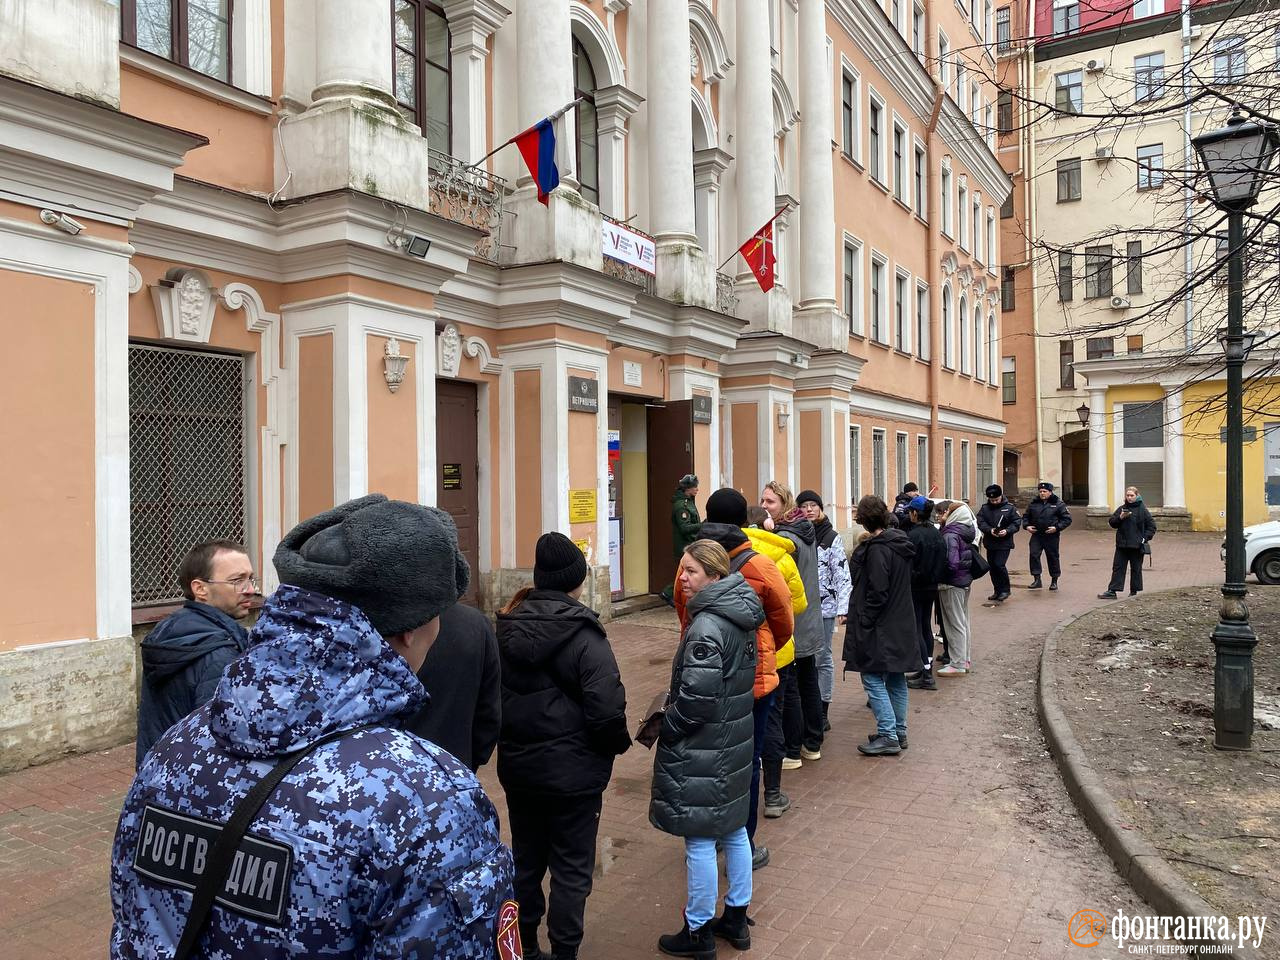 Третий день голосования. На некоторых избирательных участках в Петербурге к полудню выстроились очереди